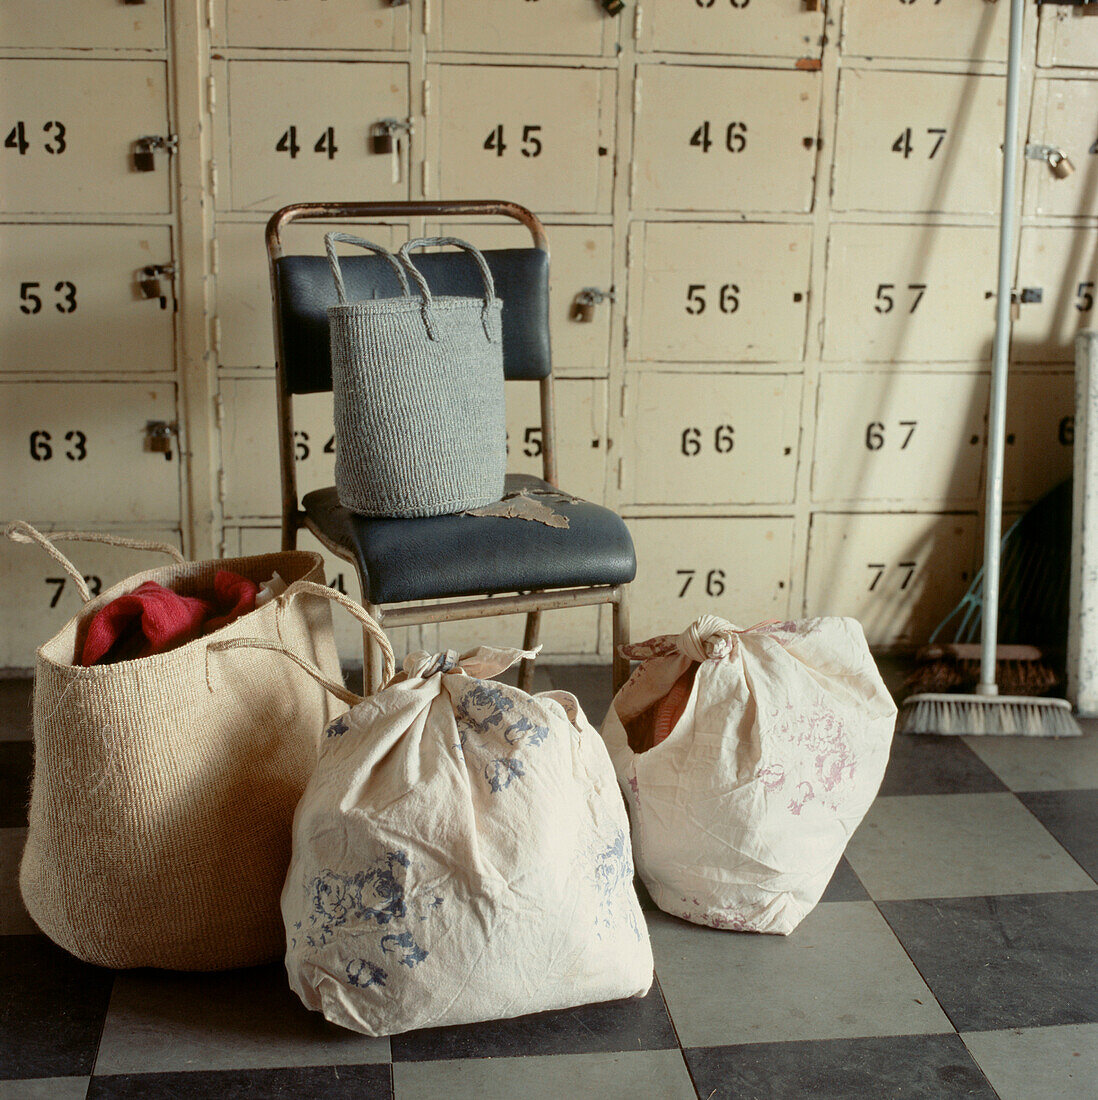 Zusammengebundene Säcke mit Wäsche in einer Umkleidekabine